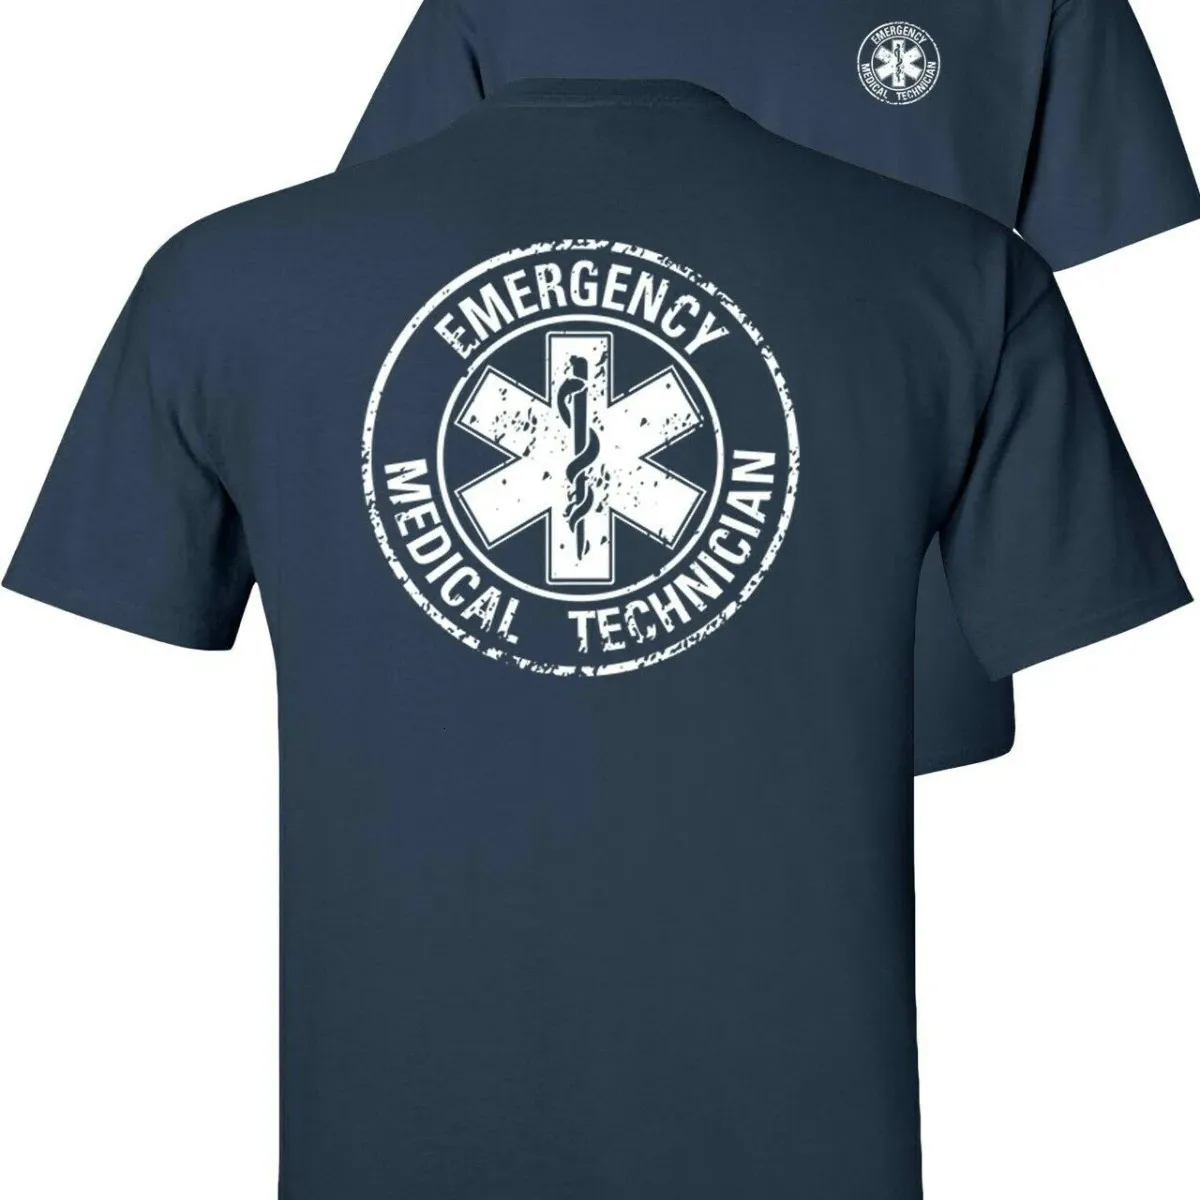 Círculo angustiado paramédico técnico camiseta ems emt ocupacional verão algodão manga curta o-pescoço unisex t camisa S-3XL 240220